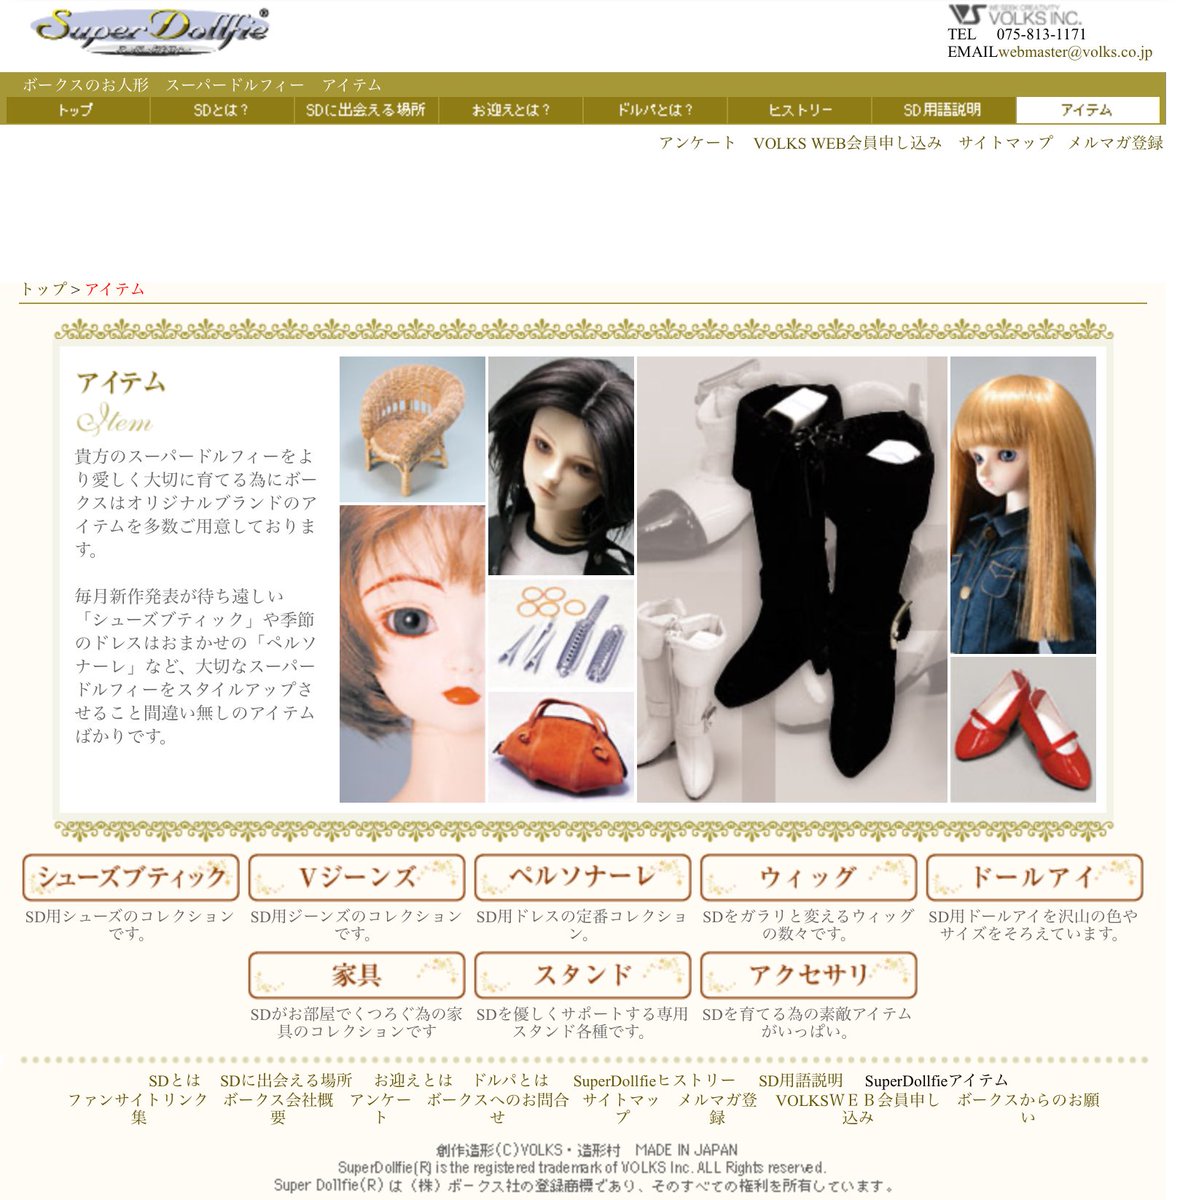 2005 super dollfie site